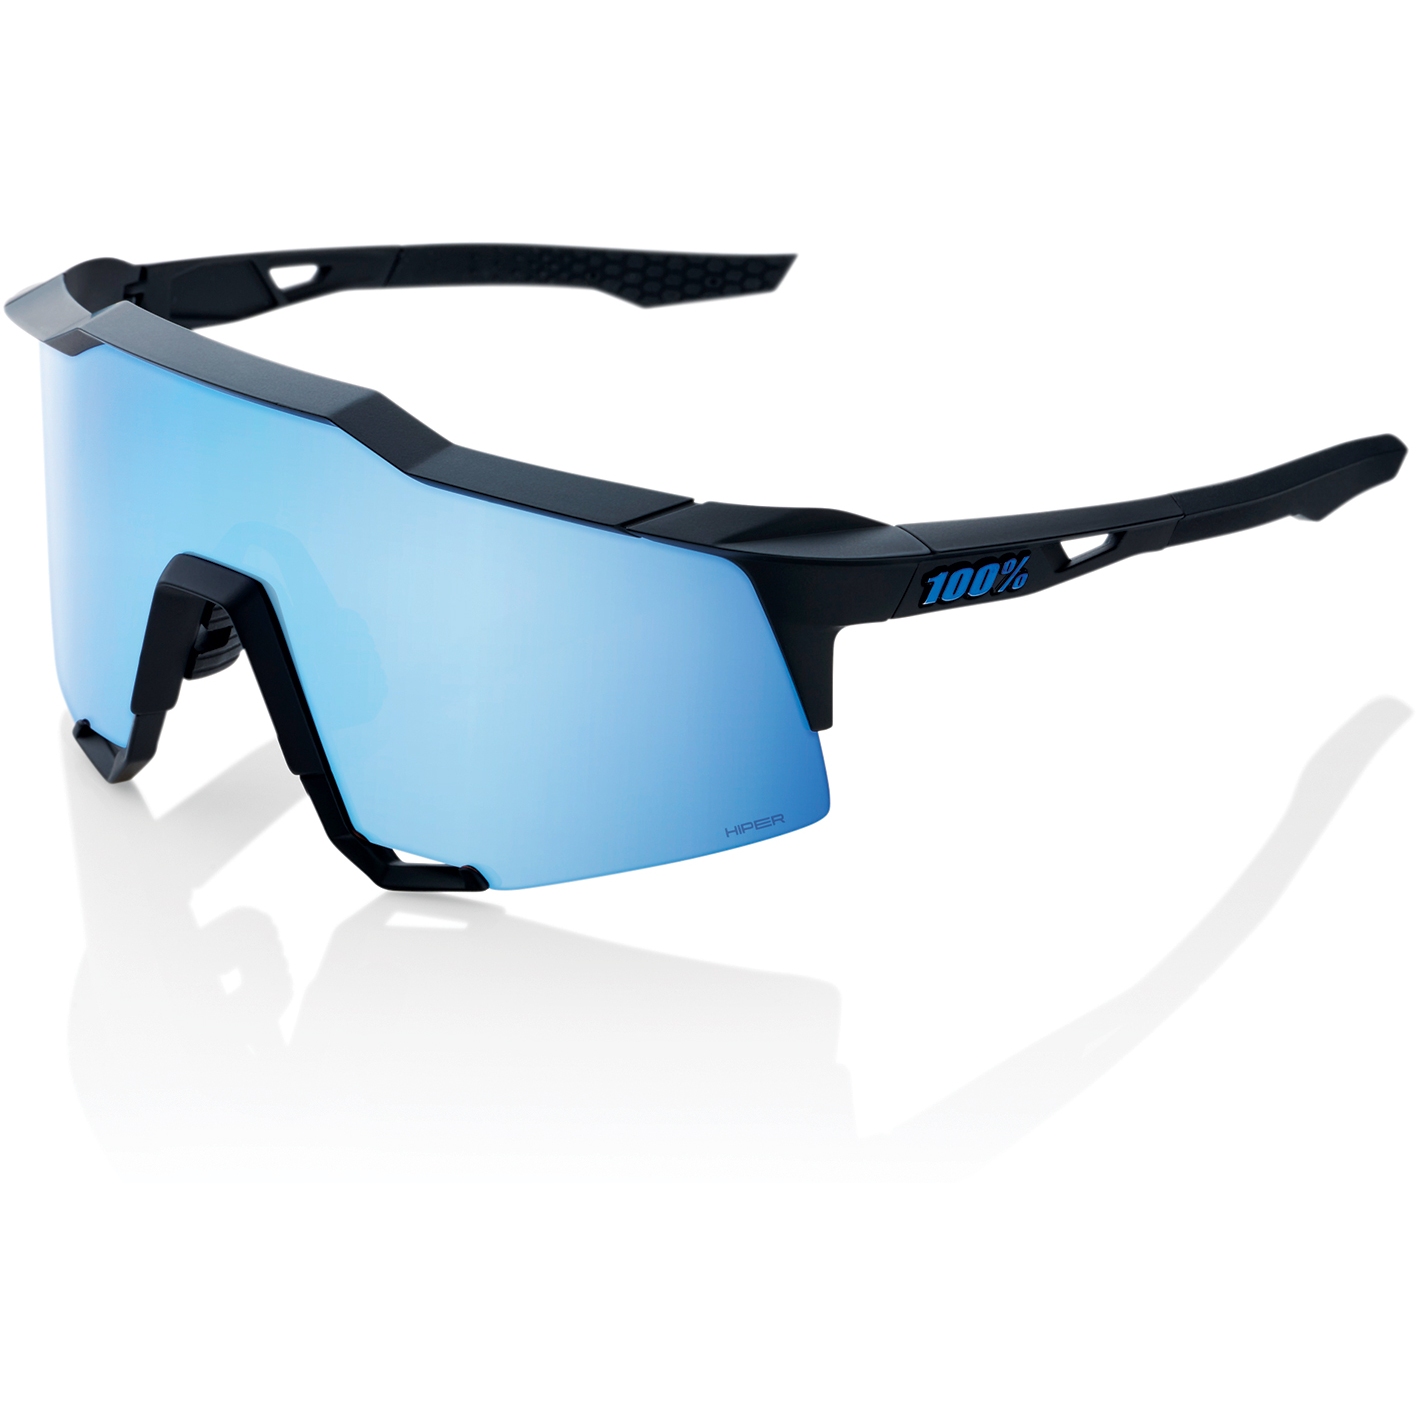 Produktbild von 100% Speedcraft Brille - HiPER Mirror Lens - Matte Black / Blue + Clear